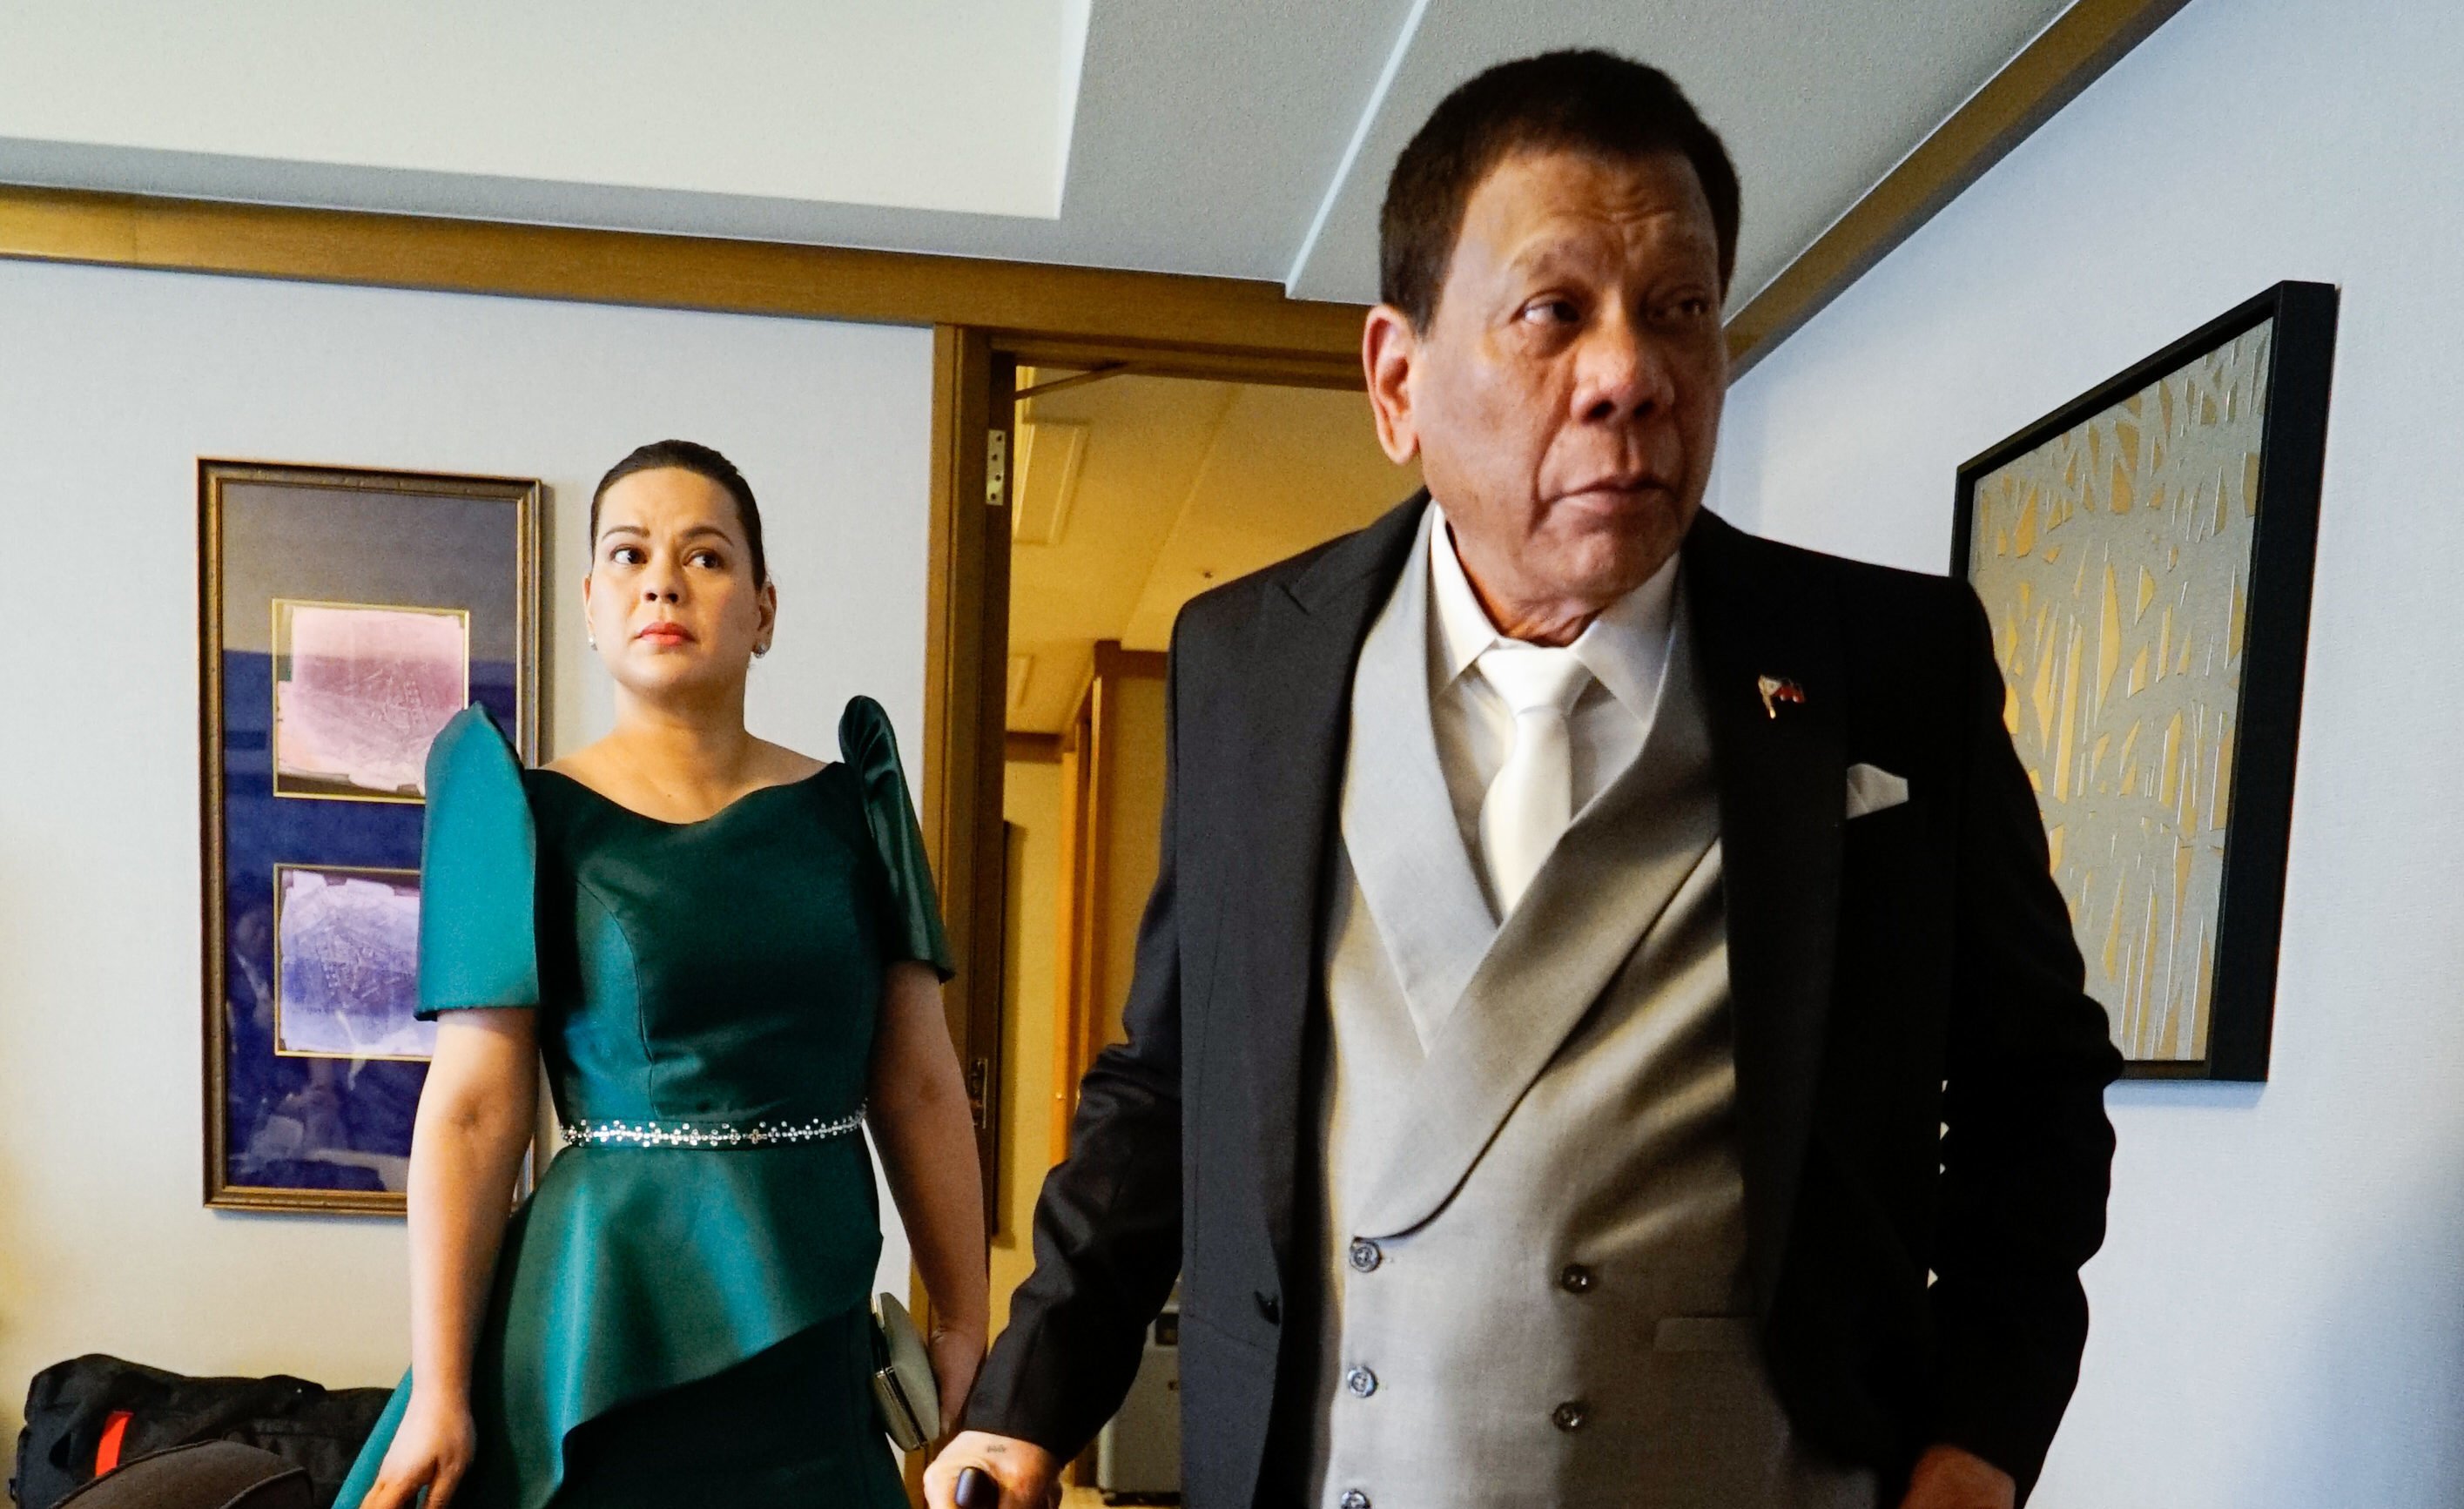 Sara Duterte’s birthday wish for President Duterte: Good health, happiness